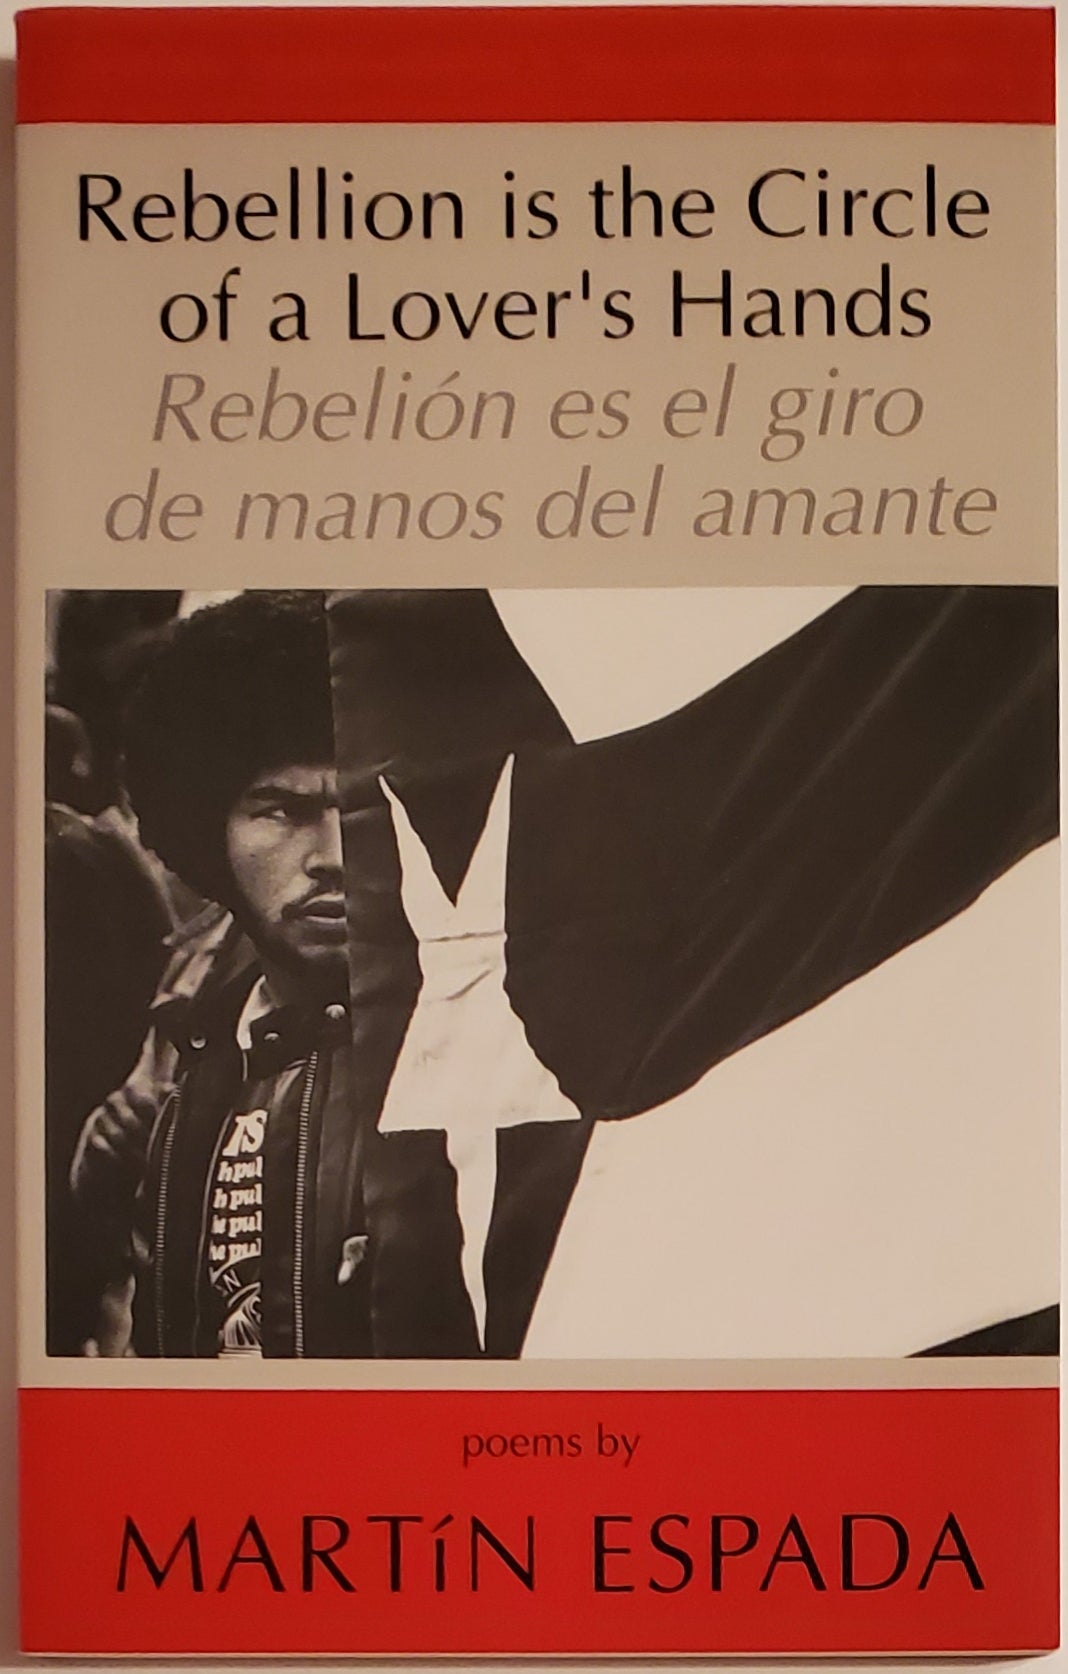 [Book #29280] REBELLION IS THE CIRCLE OF A LOVER'S HANDS / REBELION ES EL GIRO DE MANOS DEL AMANTE. Translation into Spanish by Camilo Perez-Bustillo. Martin Espada.